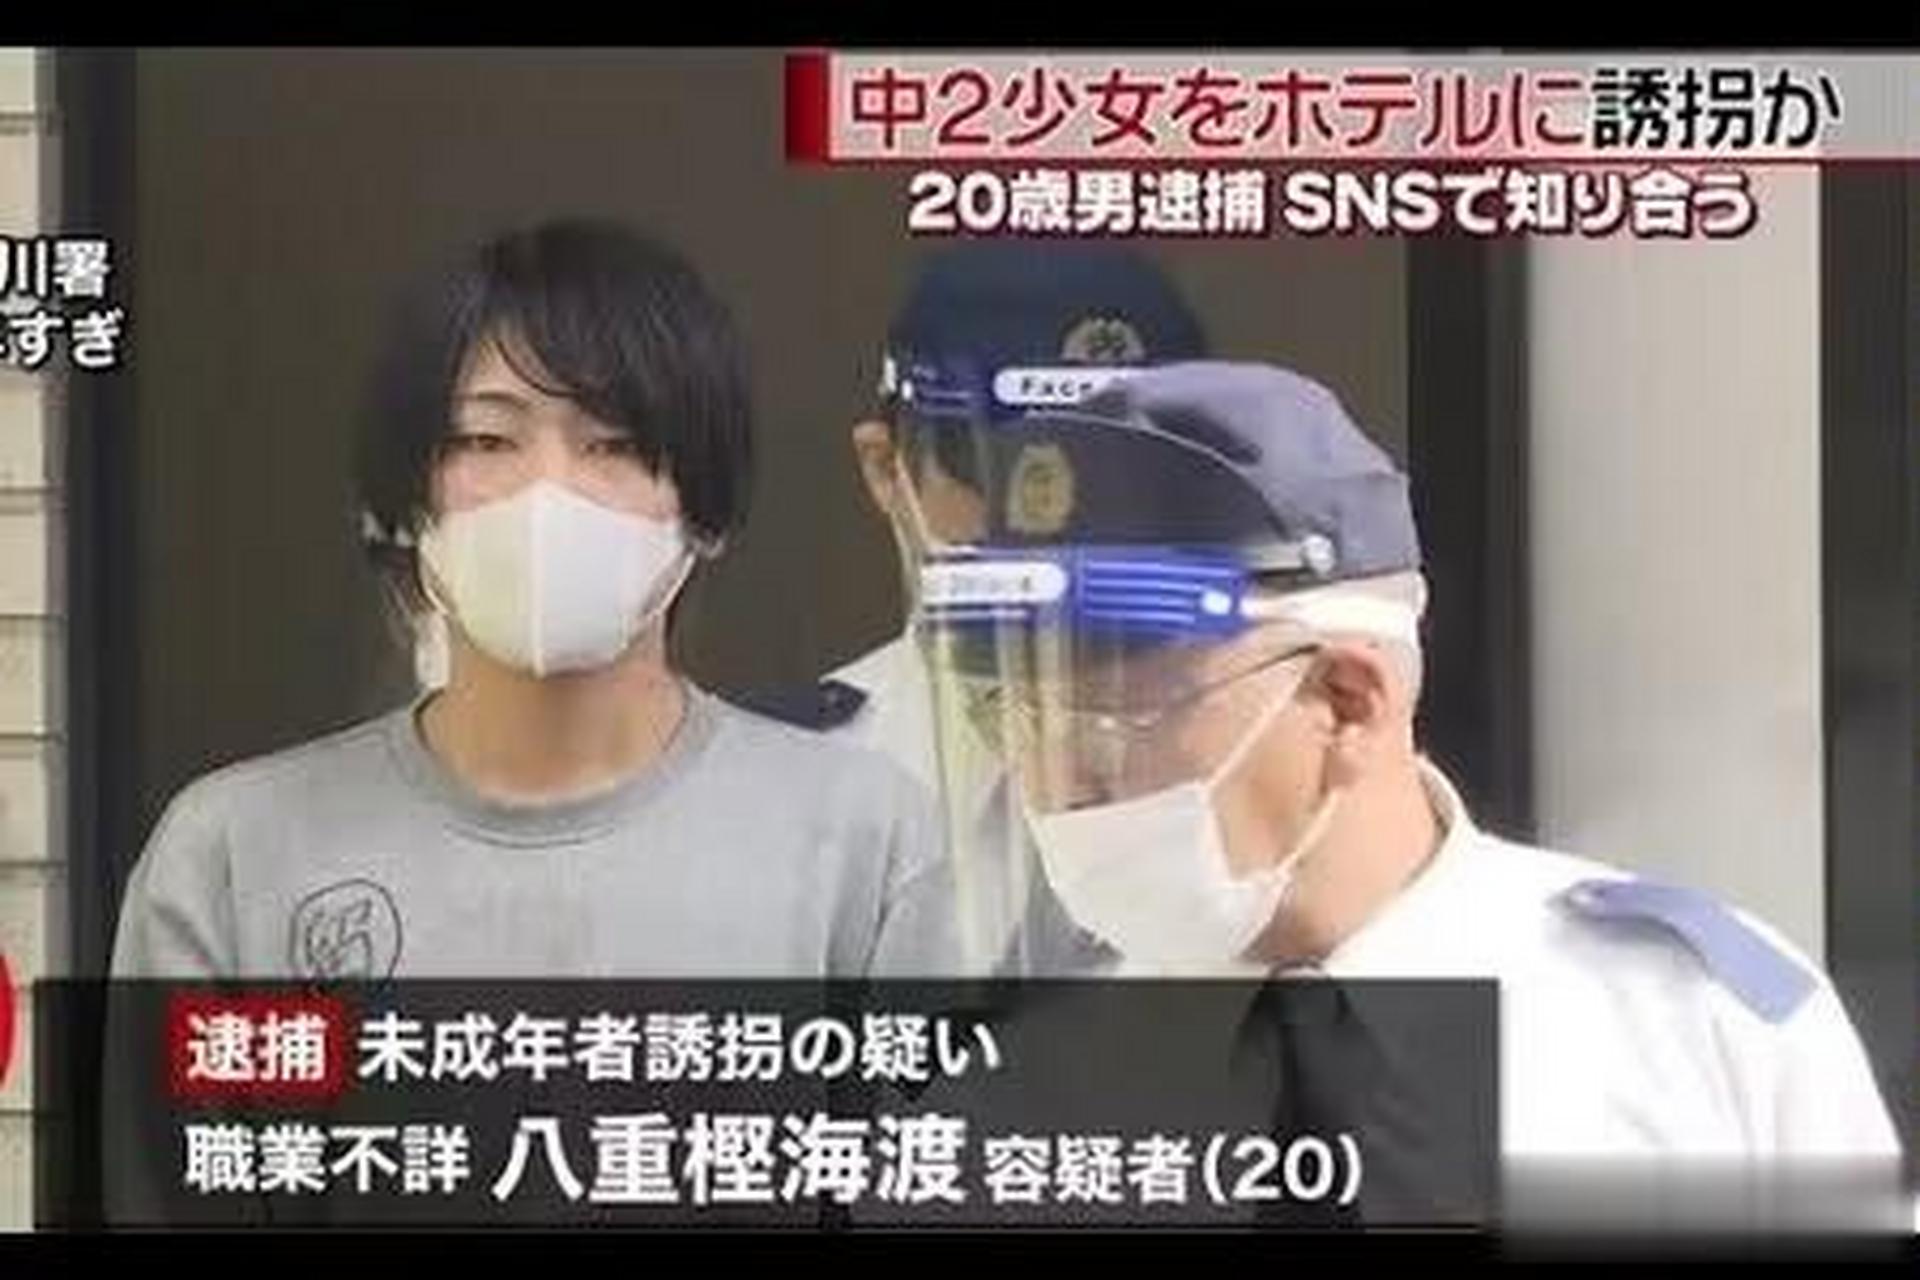 22岁日本男子号称歌舞伎町四大天王,在去年7月一网络认识崇拜明星